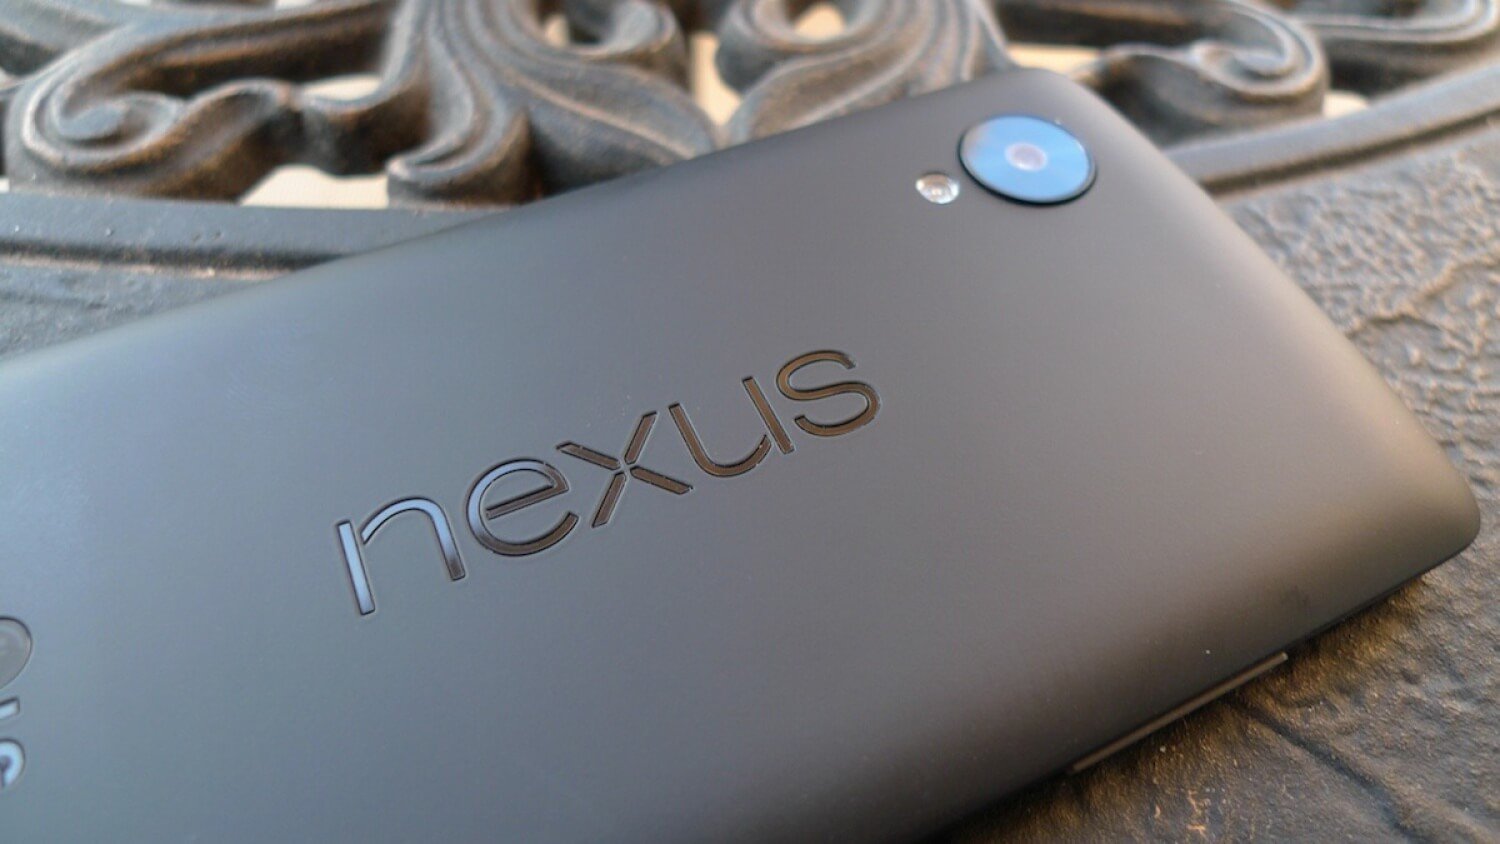 Что хотелось бы увидеть в Nexus 6? Фото.